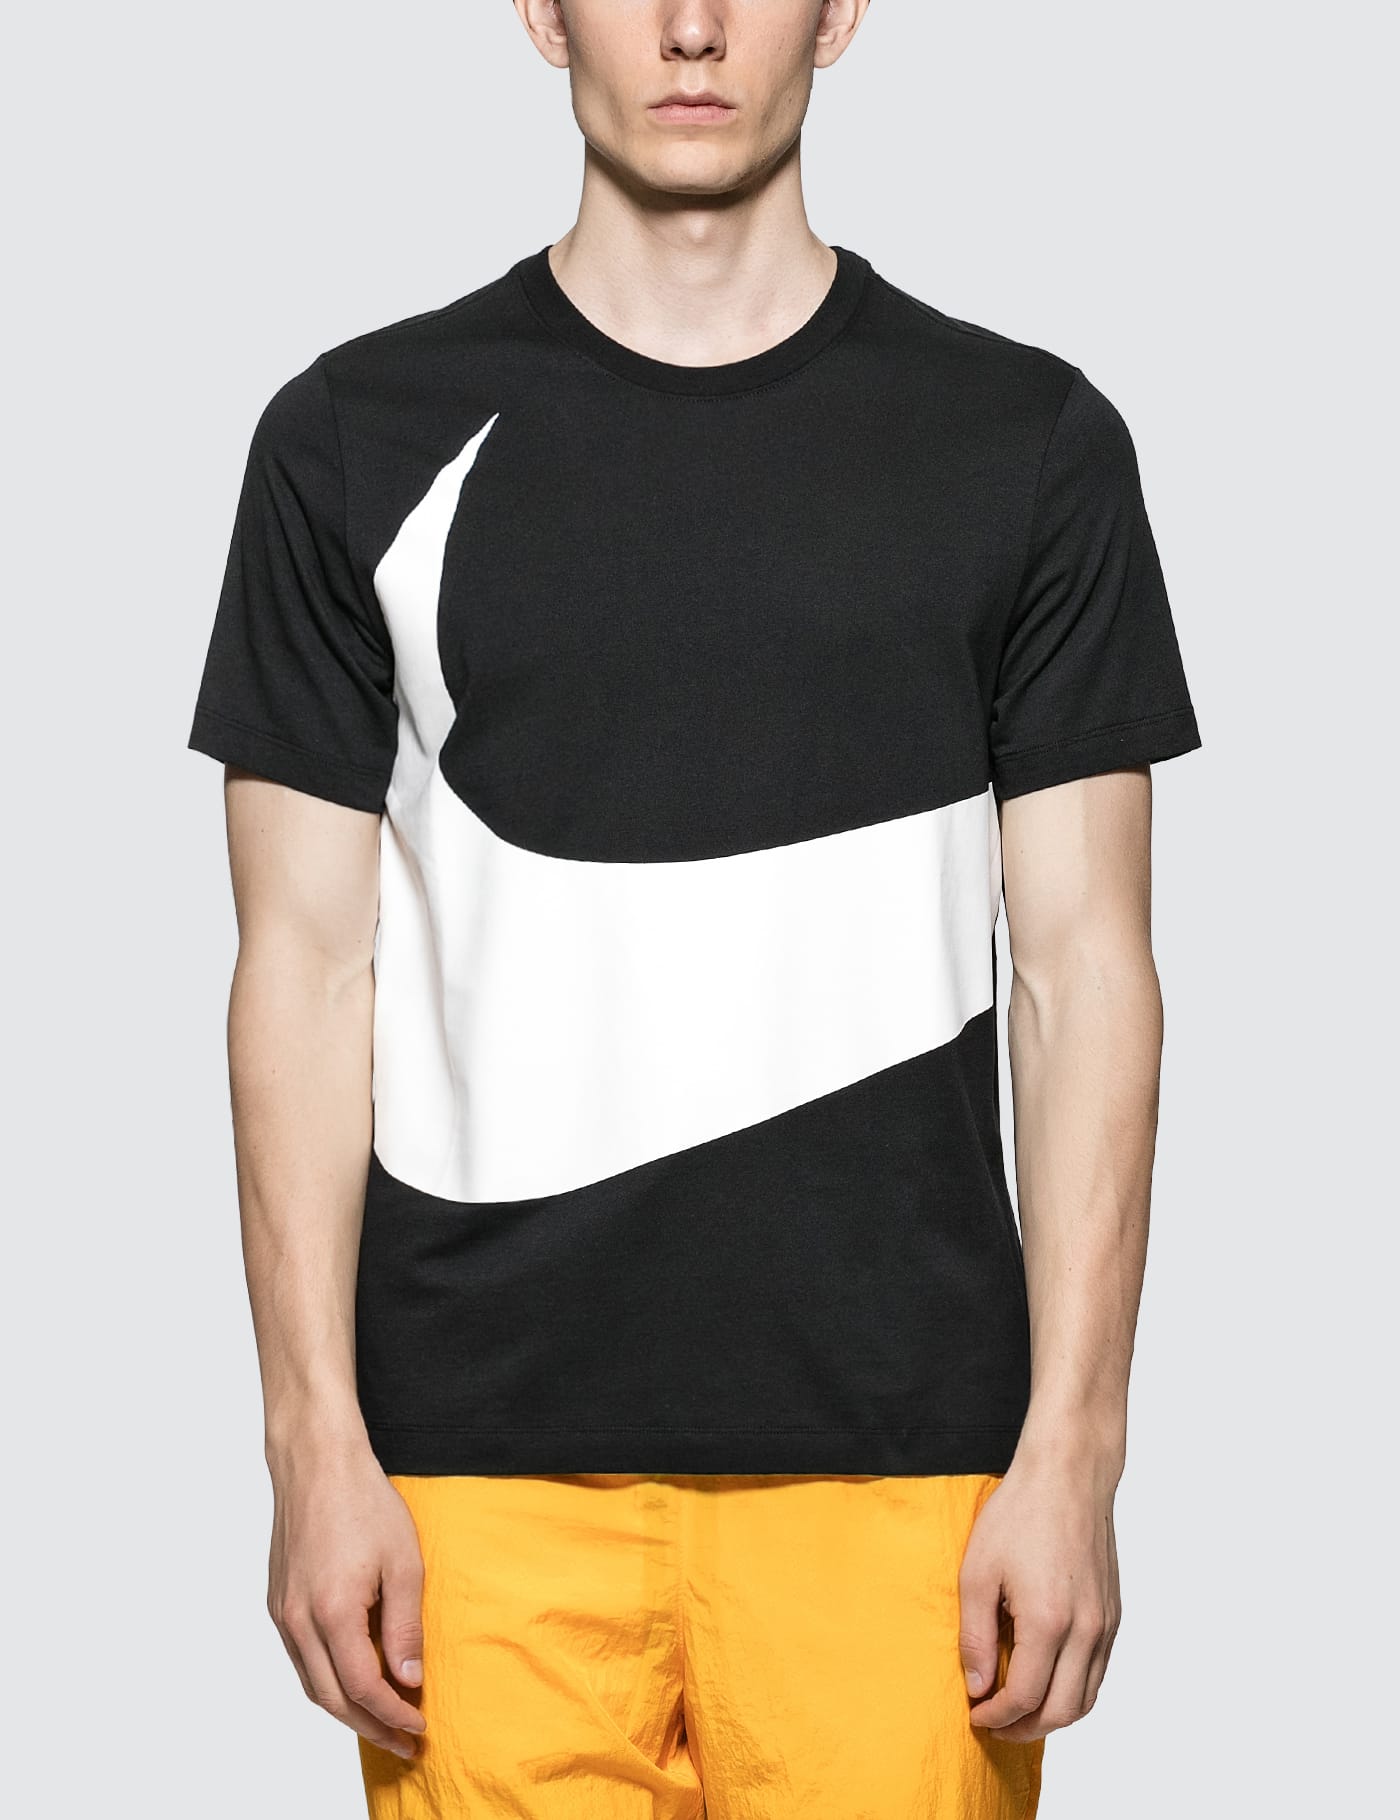 Nike - Oversized White Swoosh logo T 